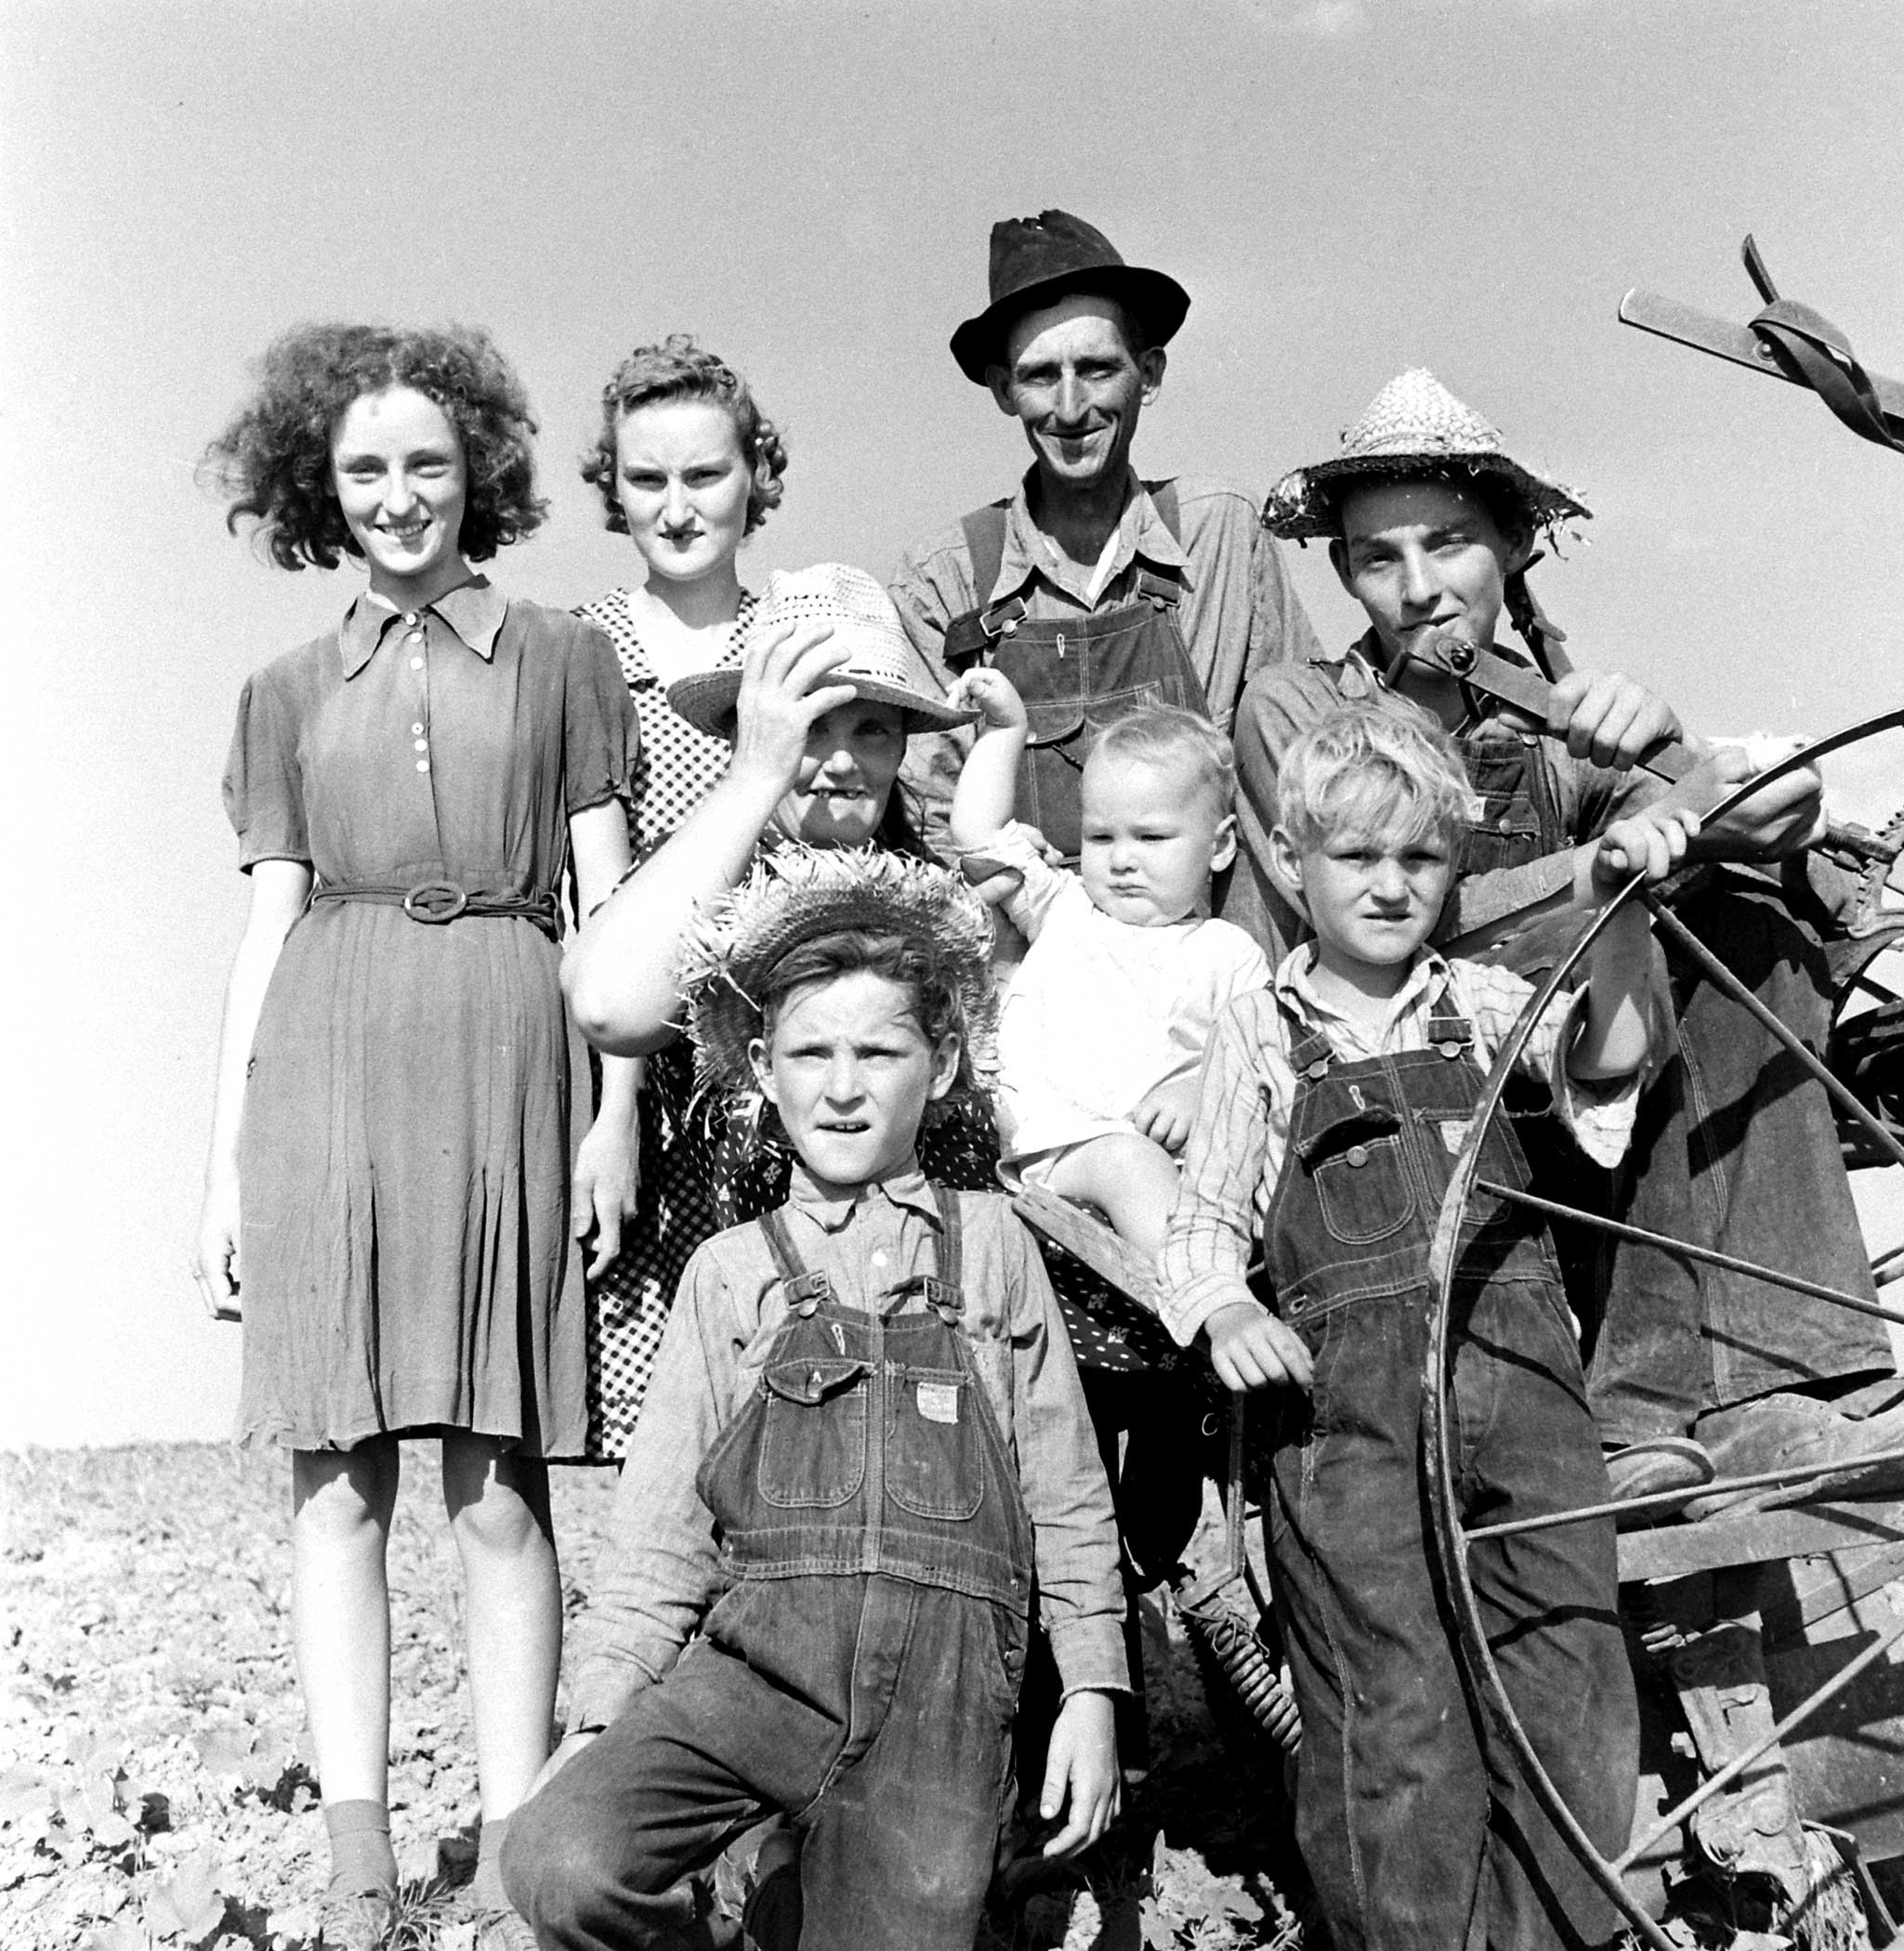 Oklahoma farmer and his family, 1942.